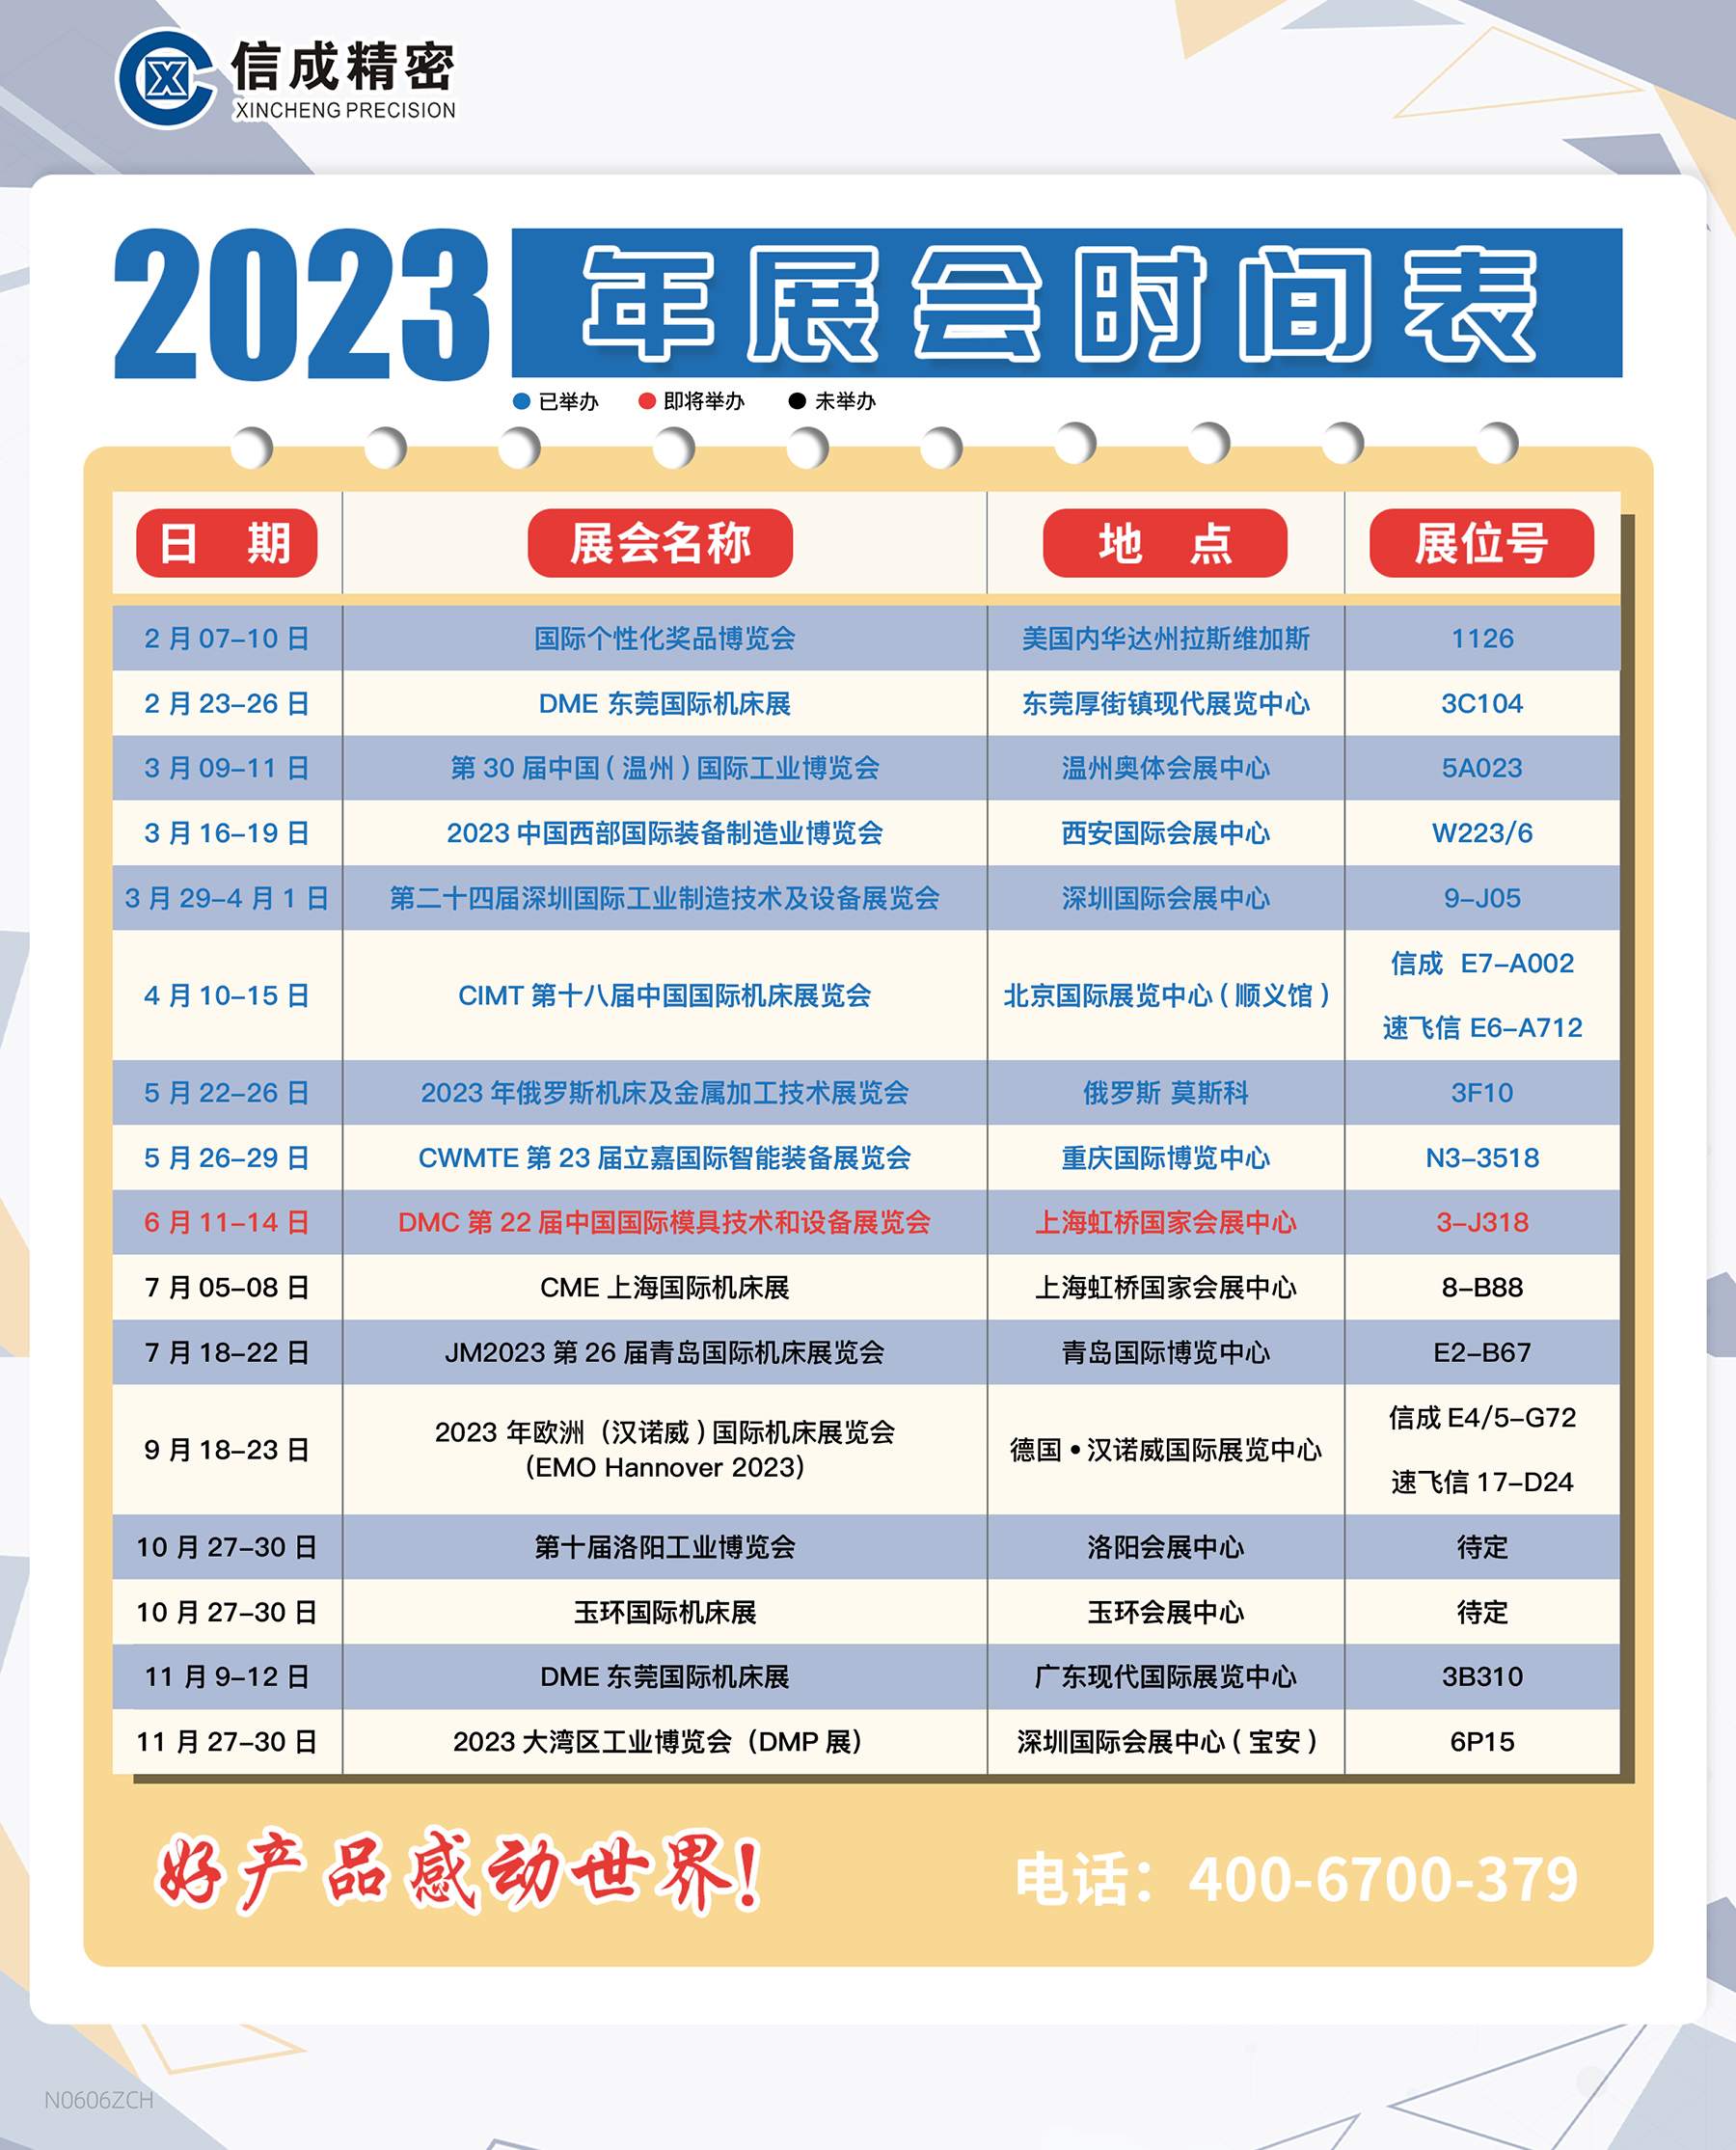 洛阳信成2023年上半年展会安排时间表